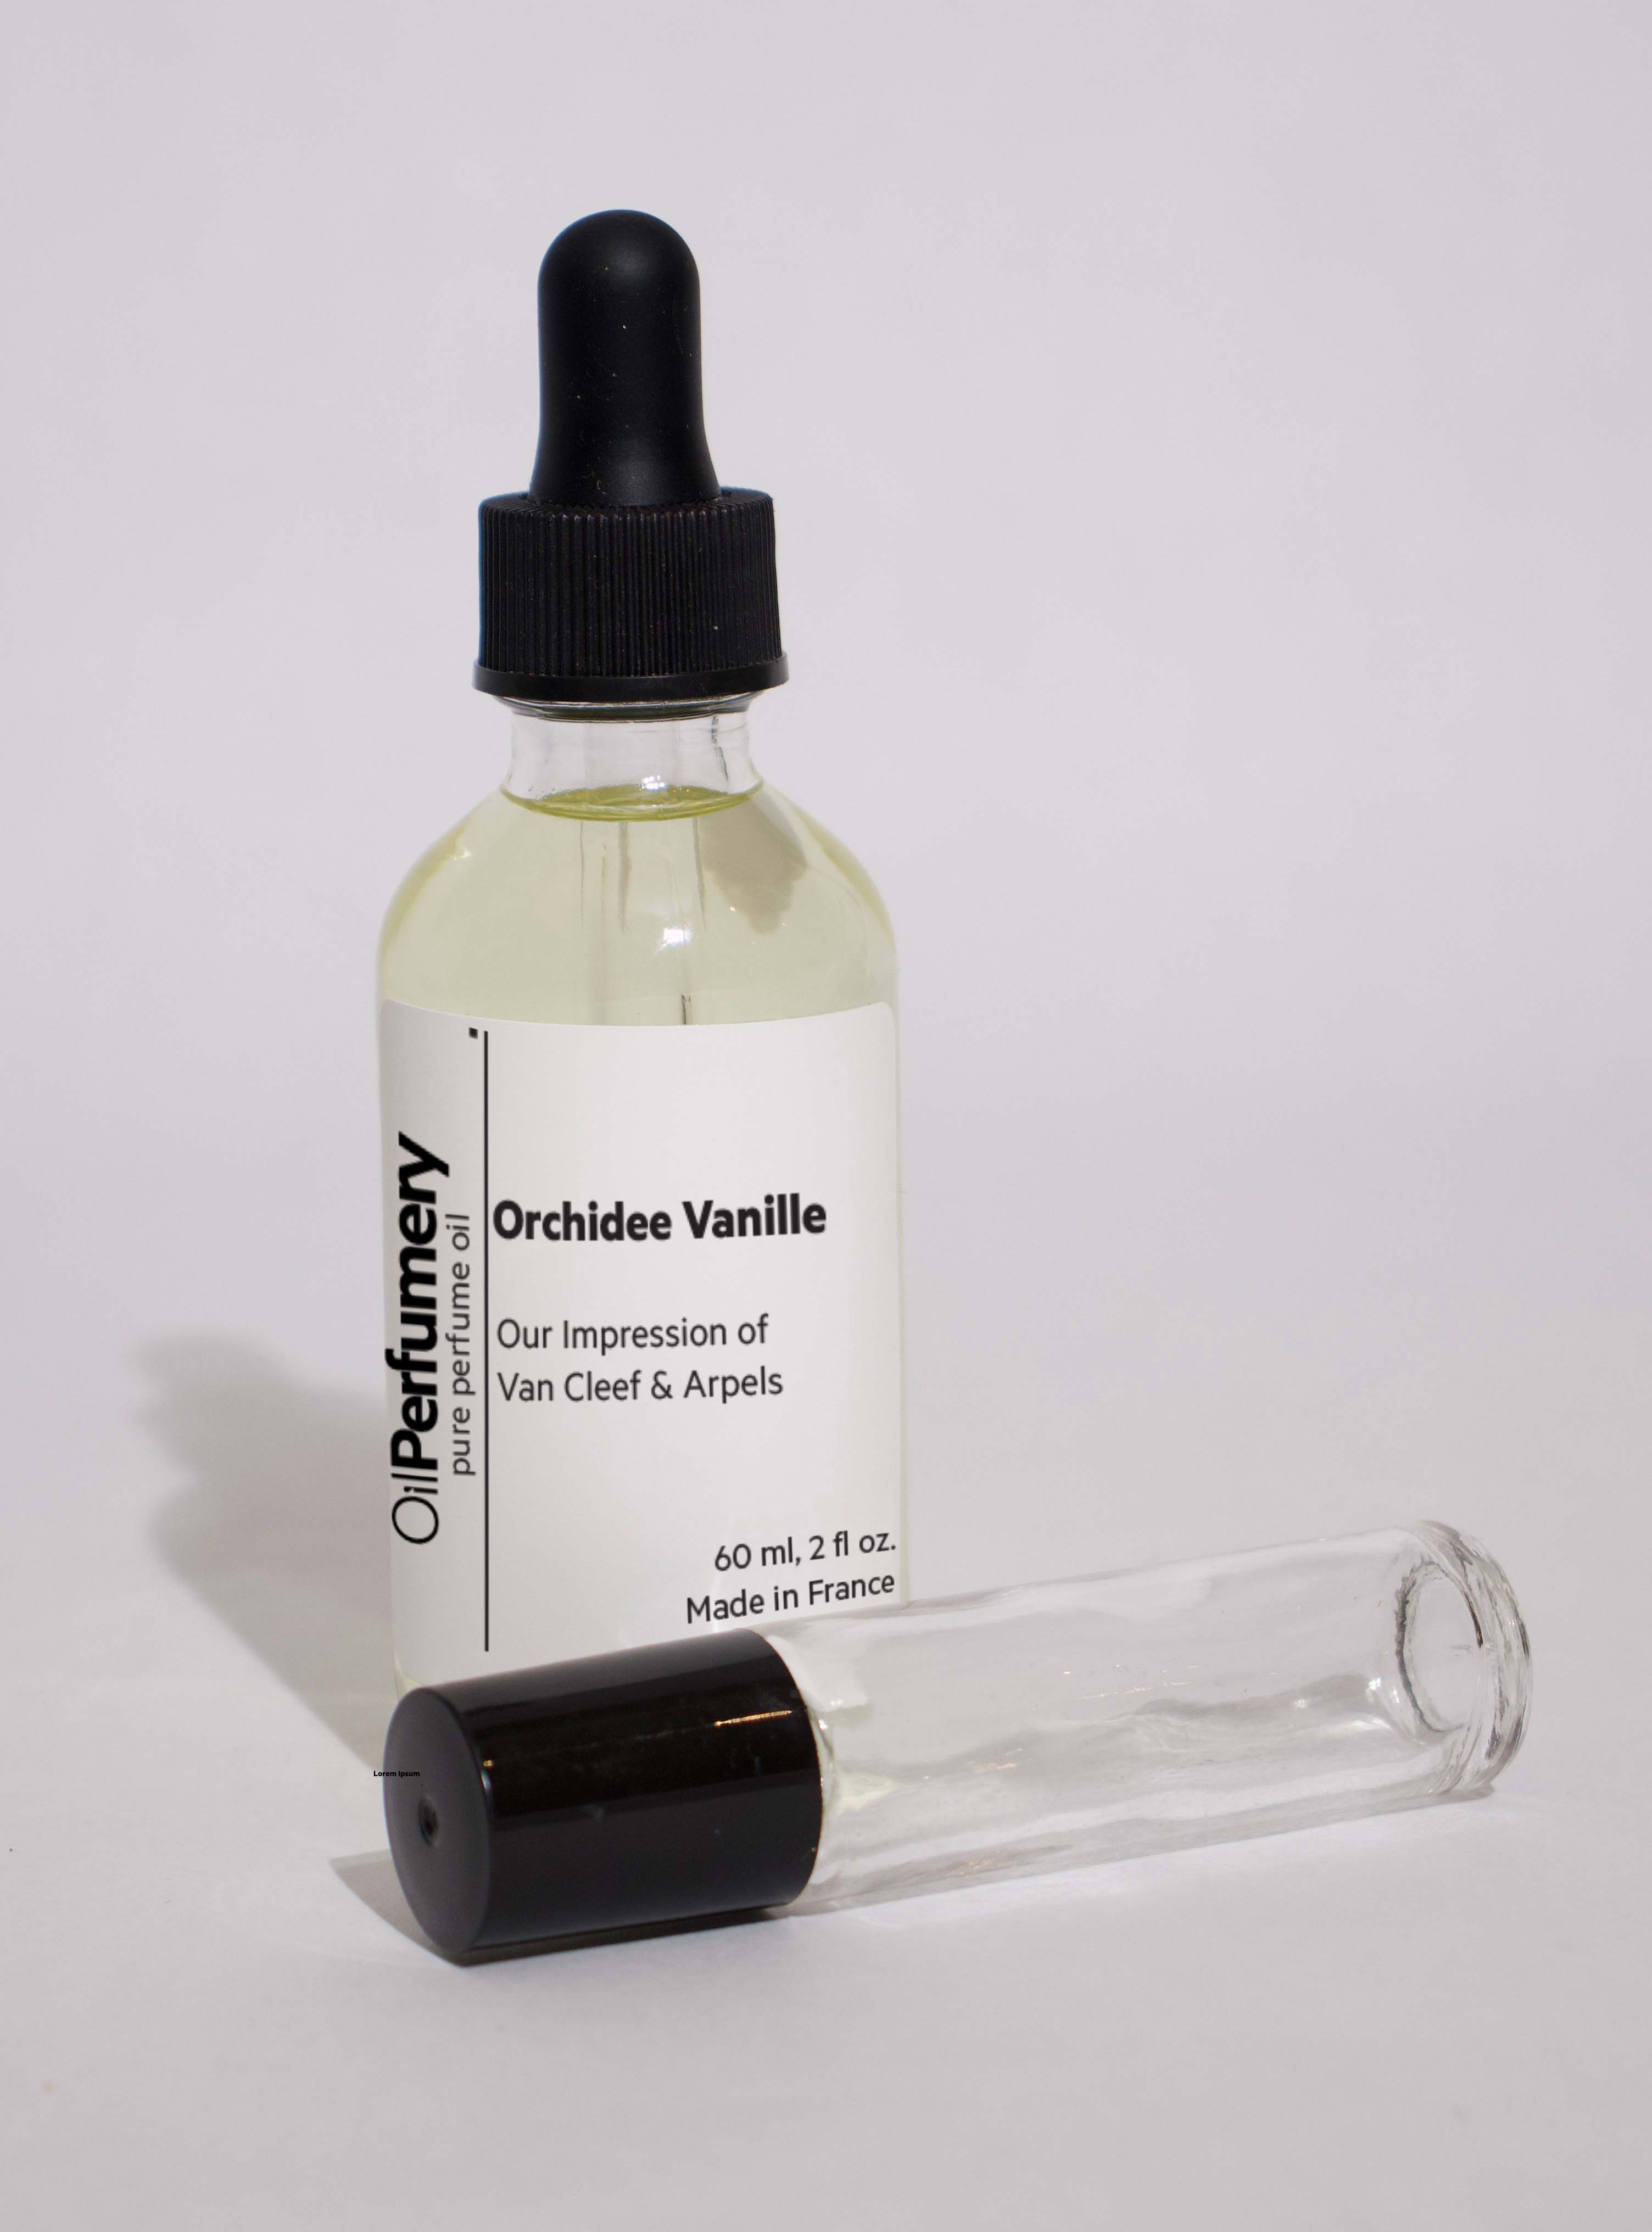 Oil Perfumery Impression of Van Cleef & Arpels - Orchidee Vanille